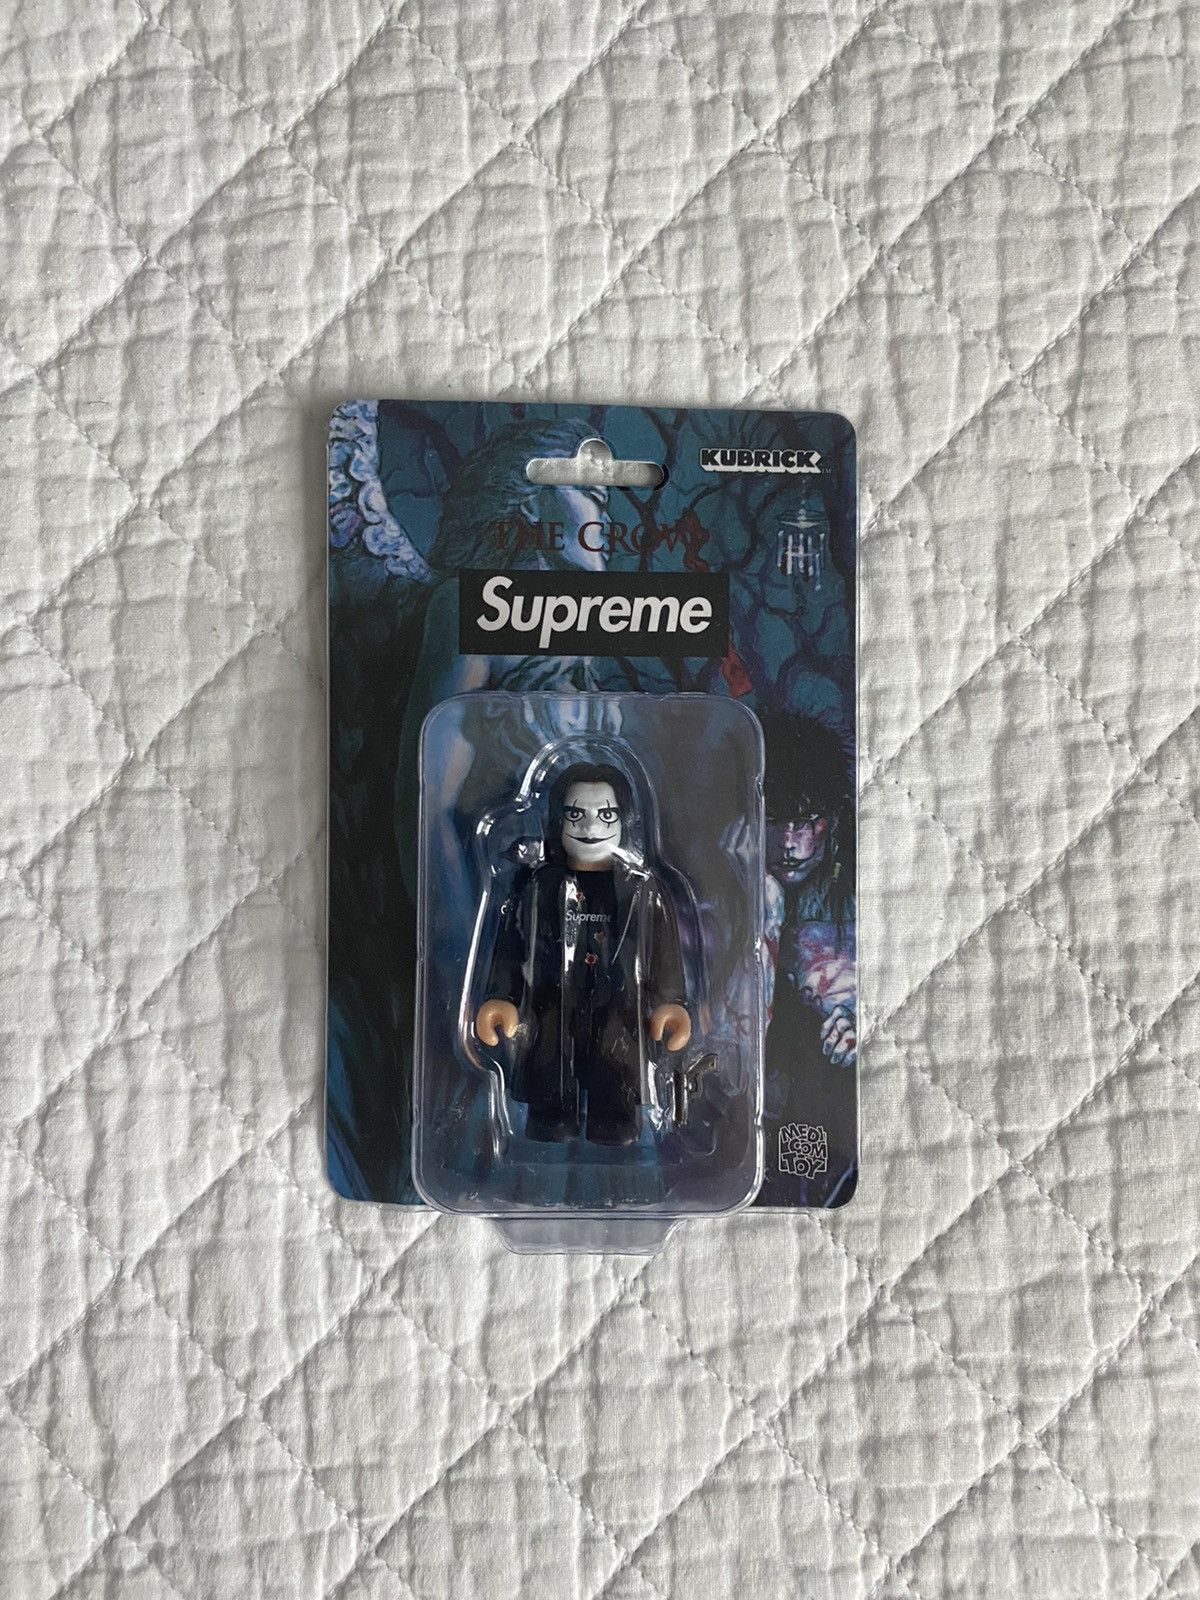 Supreme Supreme x The Crow Kubrick 100% | Grailed